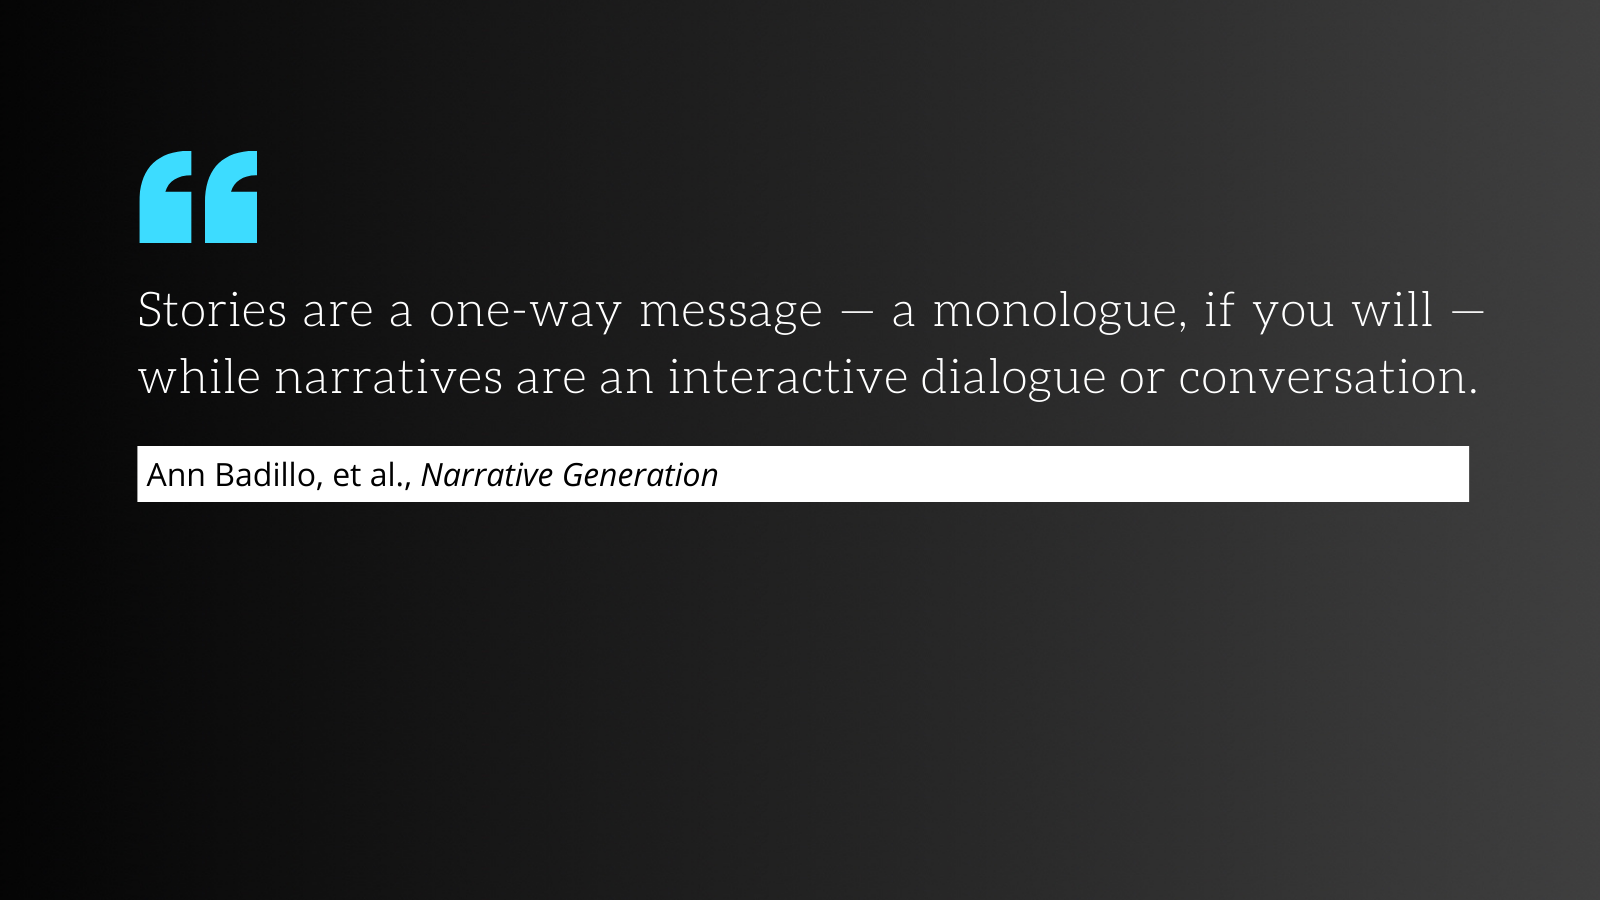 Narratives Are an Interactive Dialogue